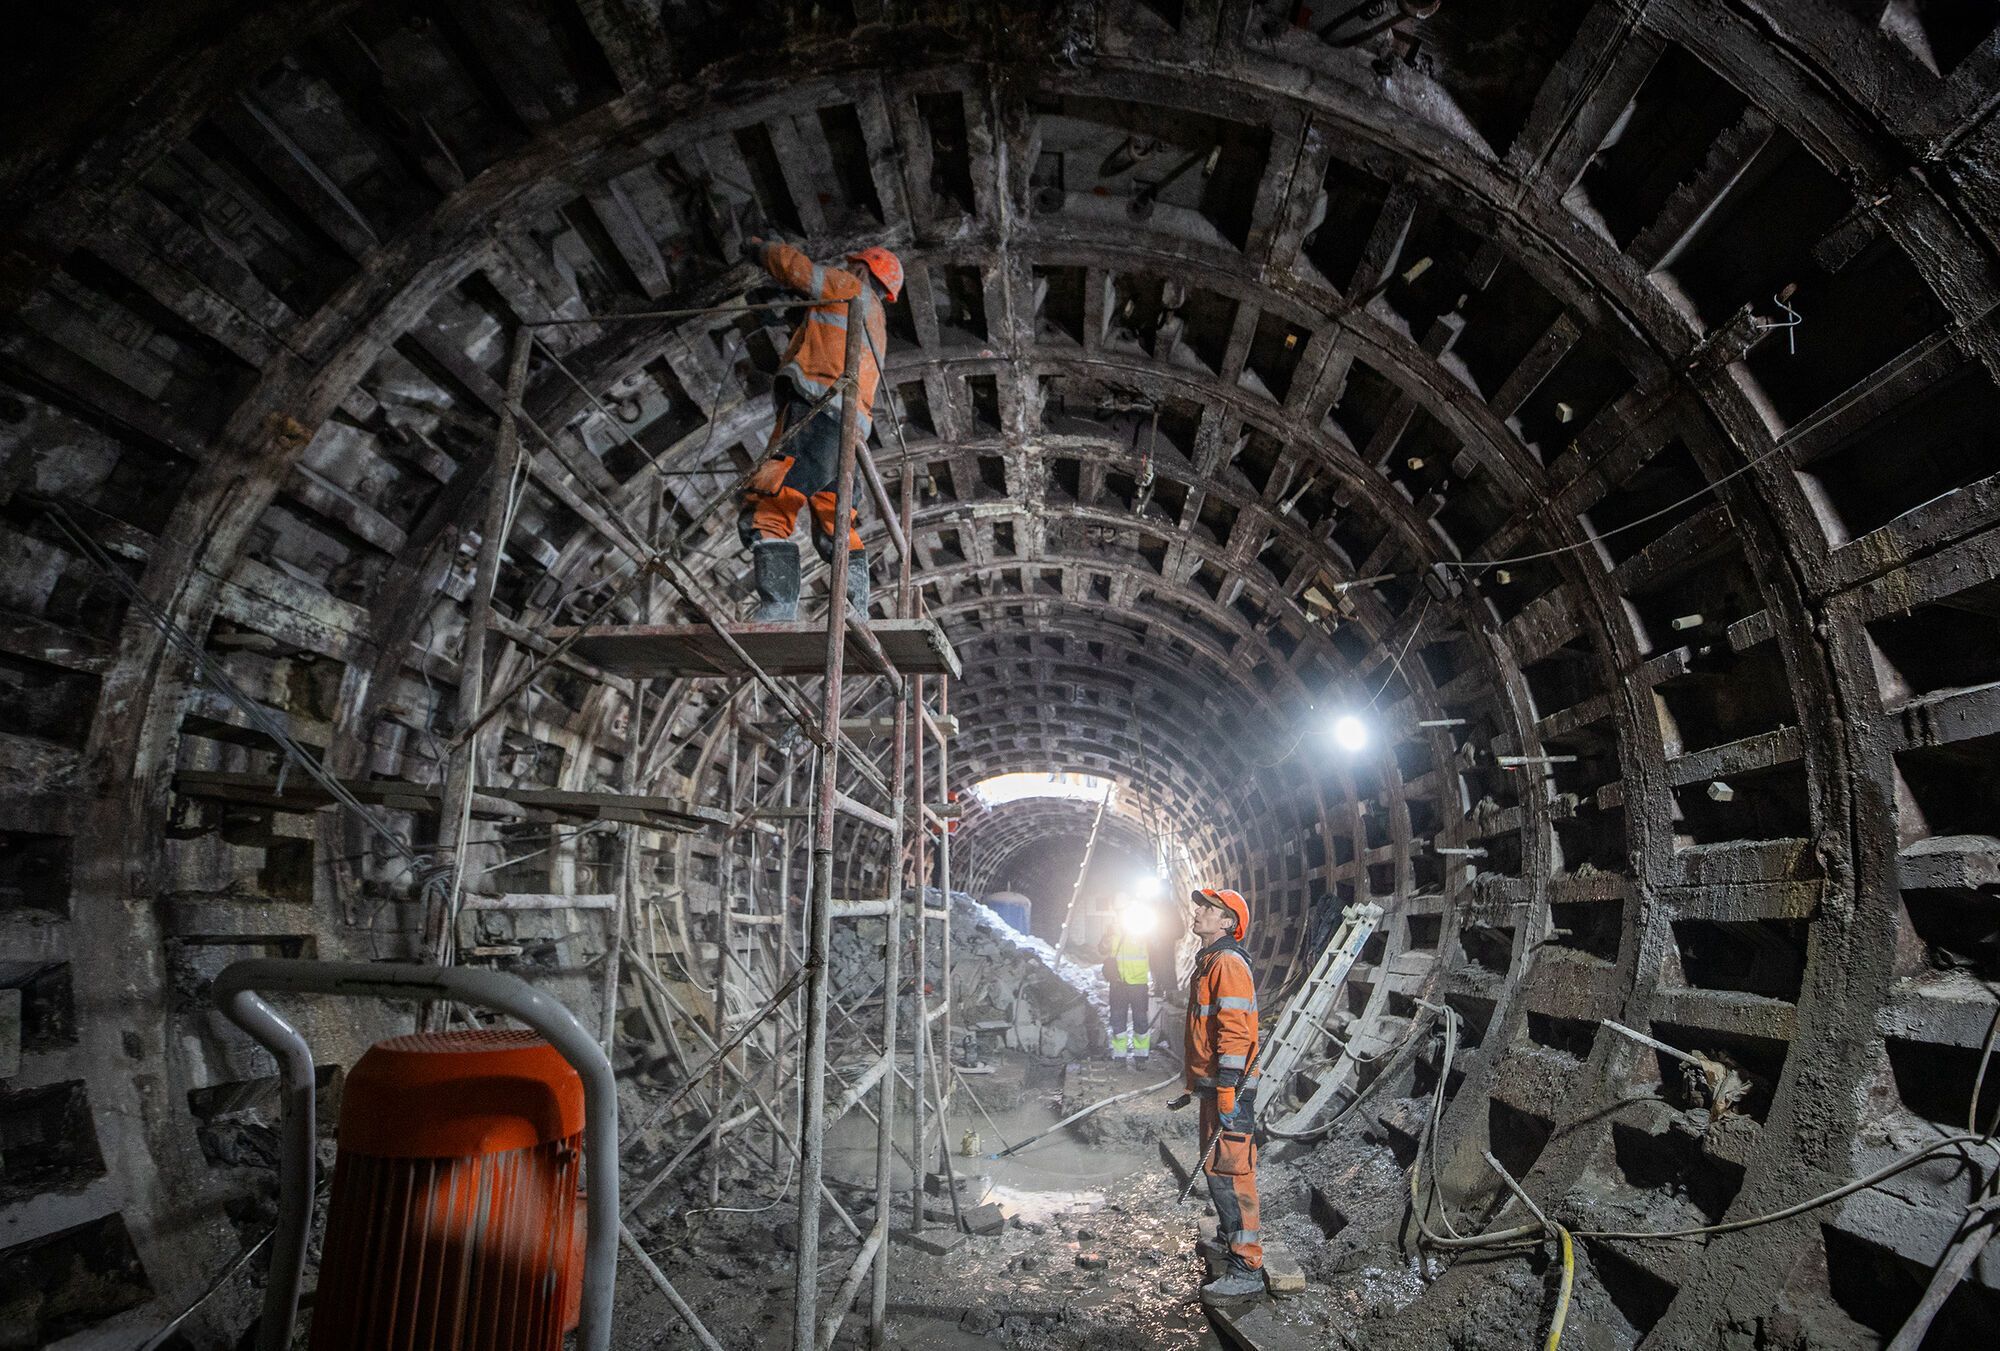 Почали демонтаж тюбінгів: у КМДА показали, як ремонтують тунель між станціями "Деміївська" і "Либідська". Фото і відео